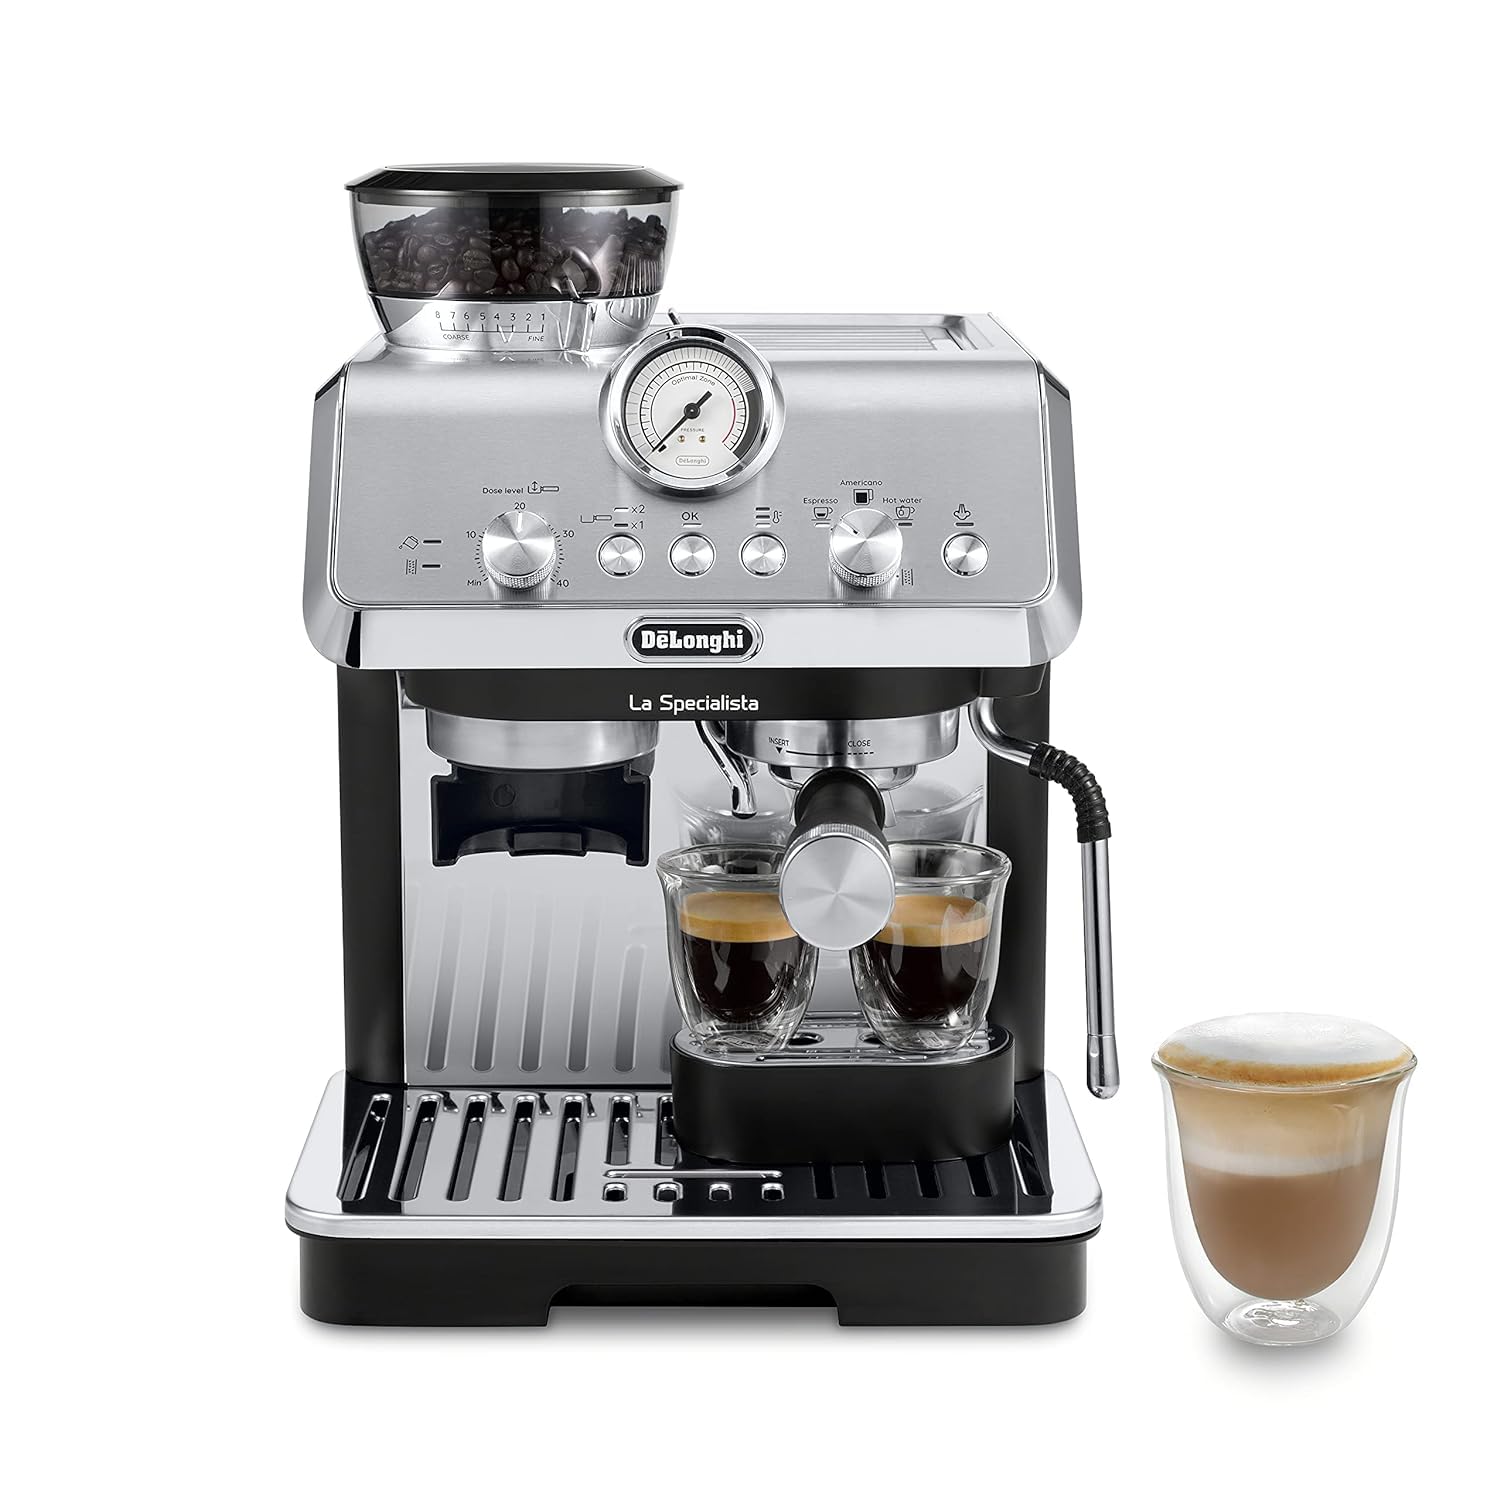 De'Longhi La Specialista Arte EC9155MB, Espresso Machine with Grinder, Bean to Cup Coffee & Cappuccino Maker $499.95